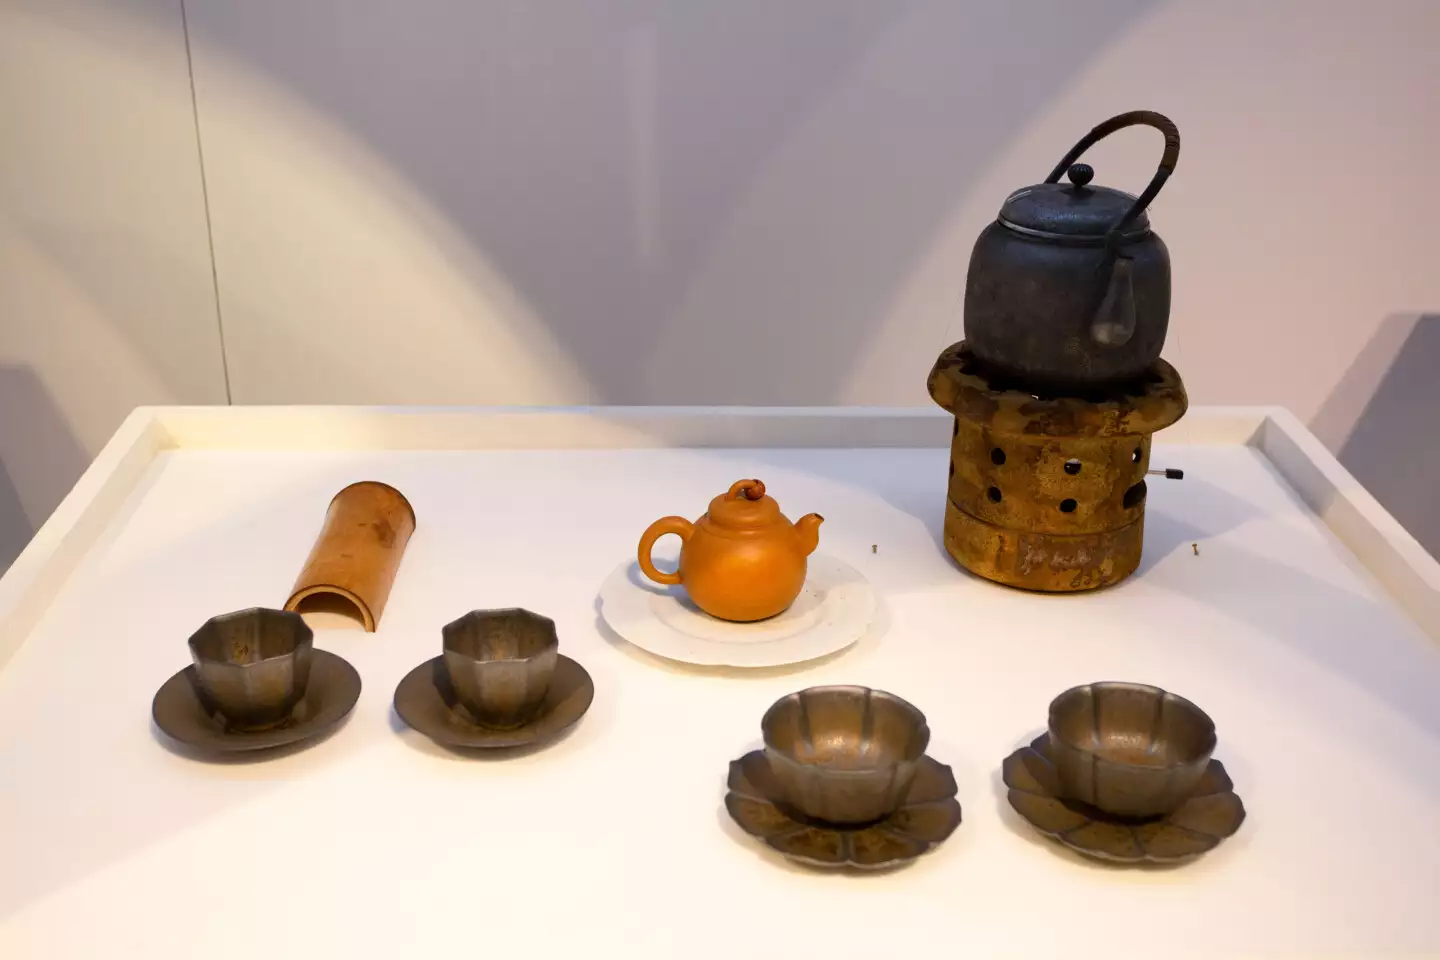 臺灣茶藝使用的茶具相當多元，有日本的銀壺、宜興的段泥壺、臺灣現代陶藝商品（風爐、杯與杯托）。圖片來源：研之有物；茶具所有：余舜德。